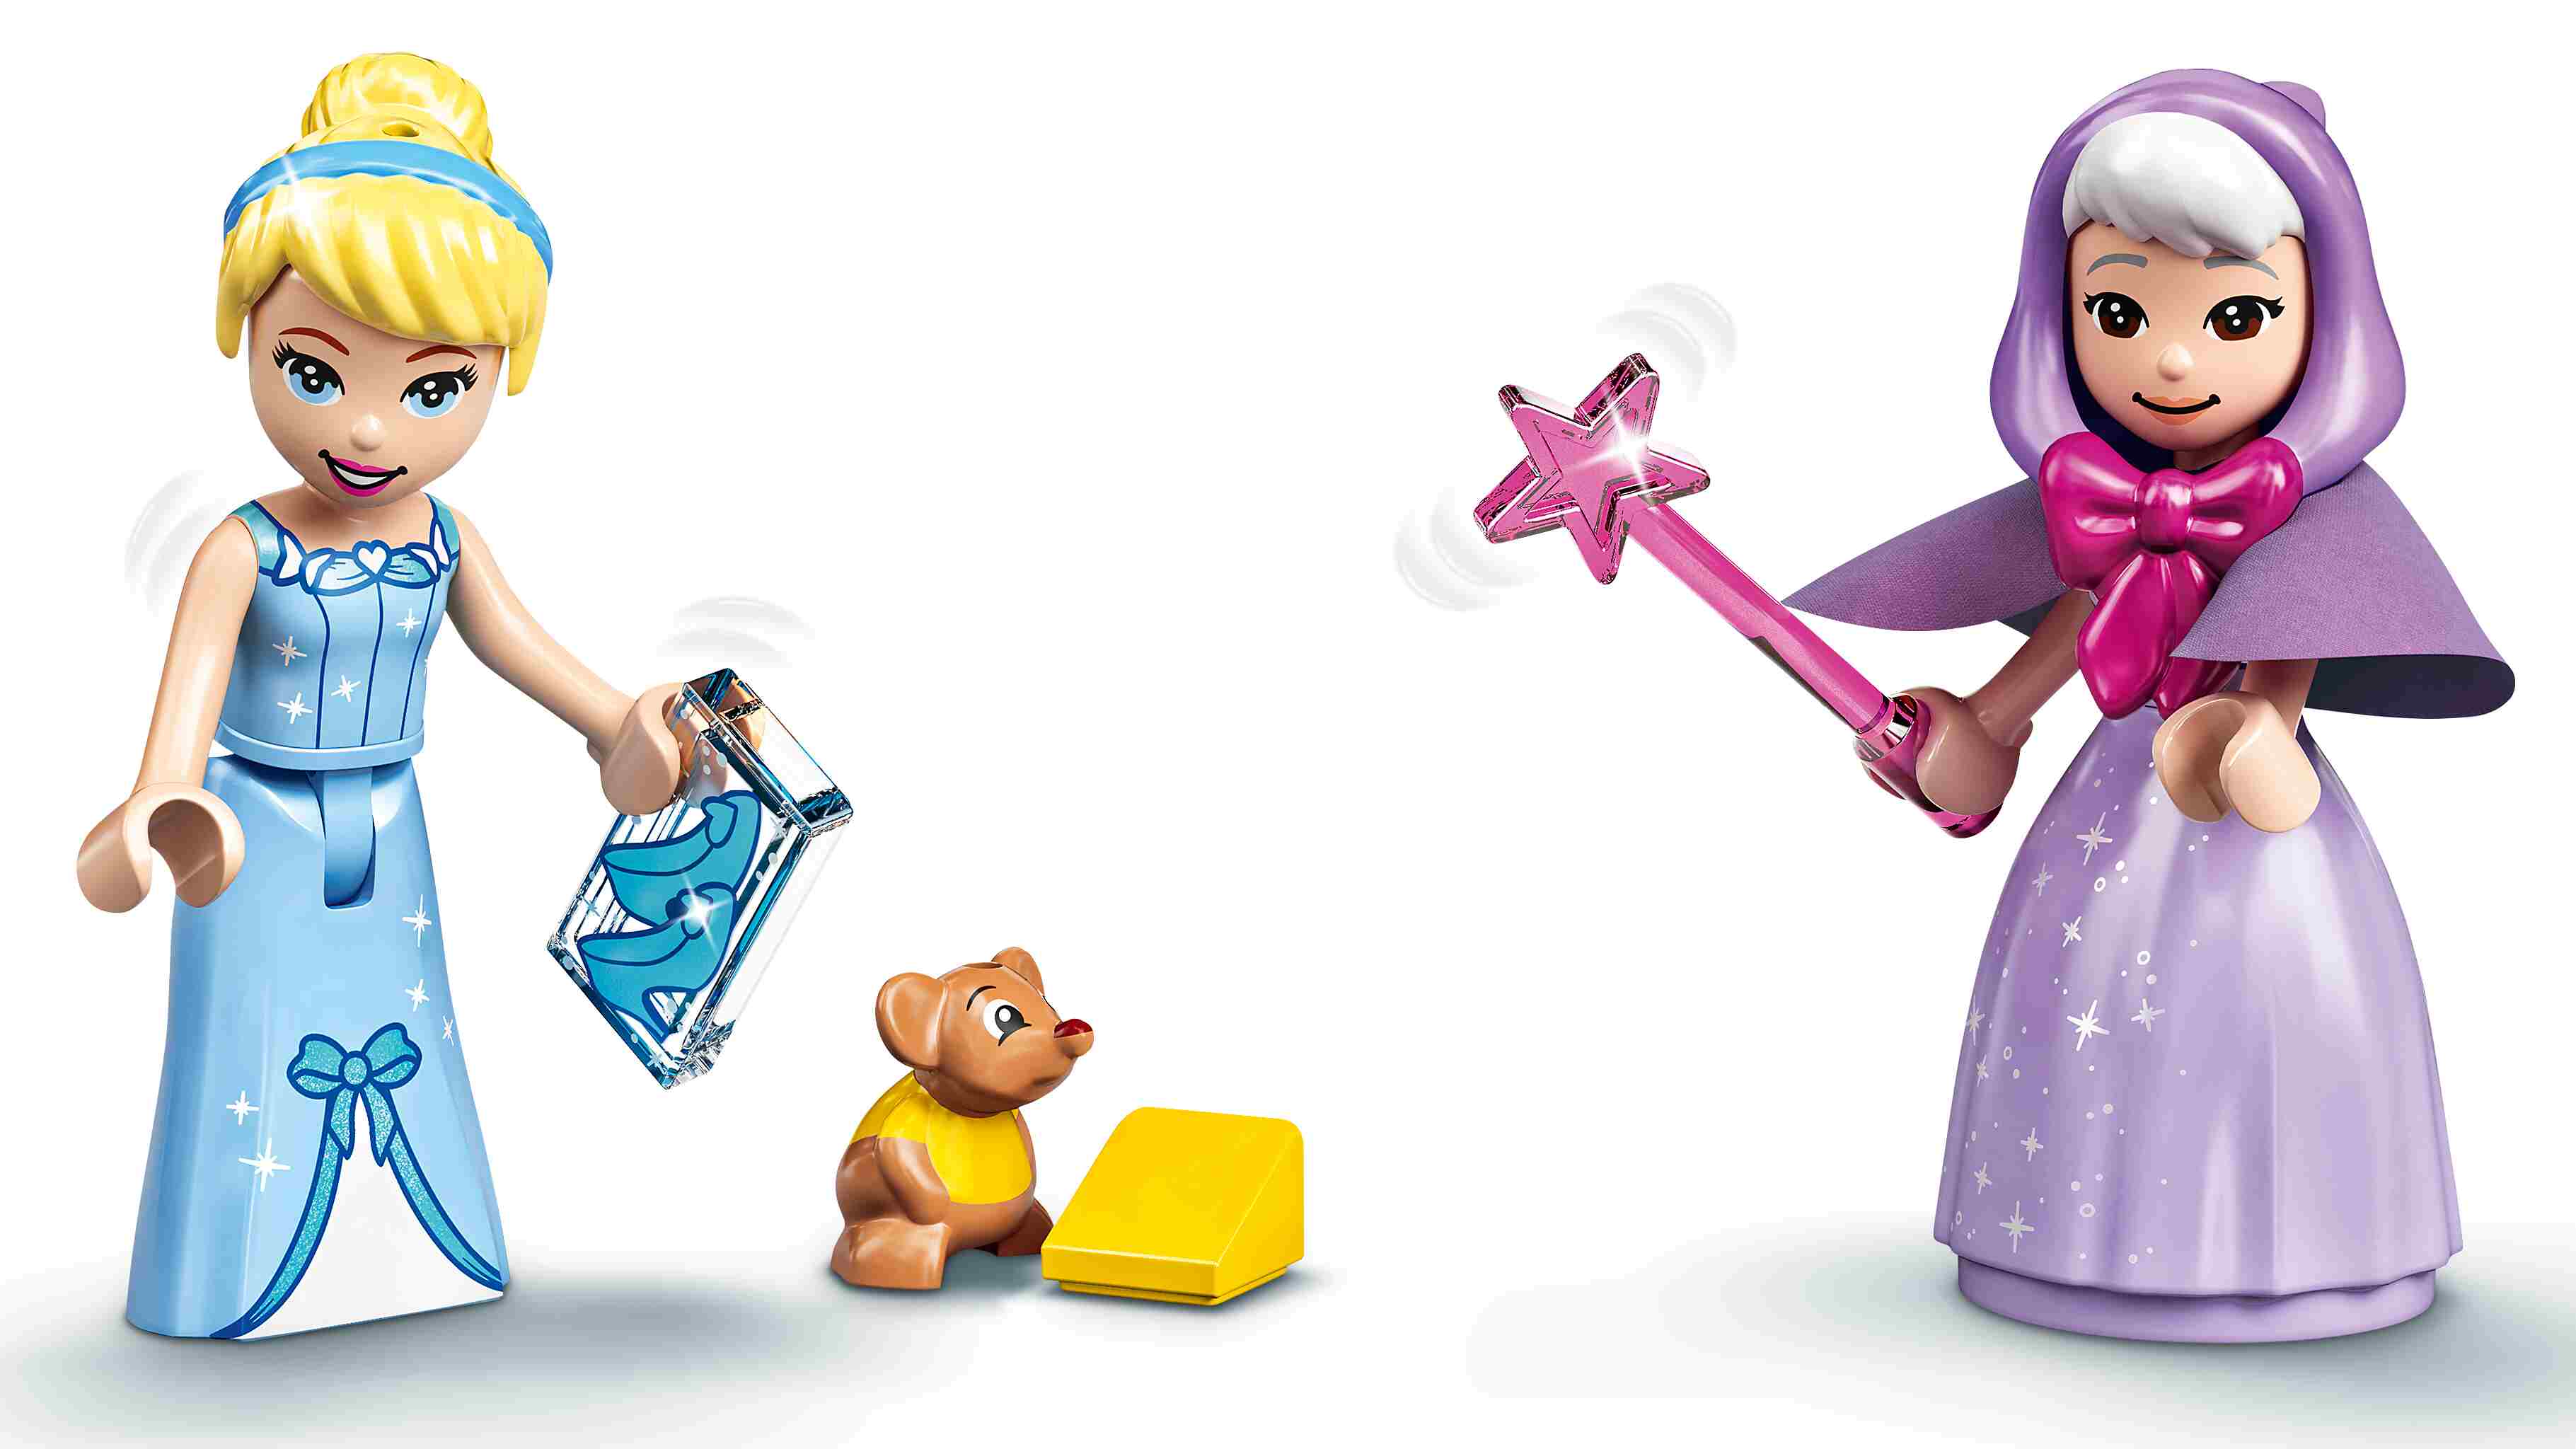 LEGO 43192 Disney Princess Cinderellas Königliche Kutsche, mit Figuren u Pferde 